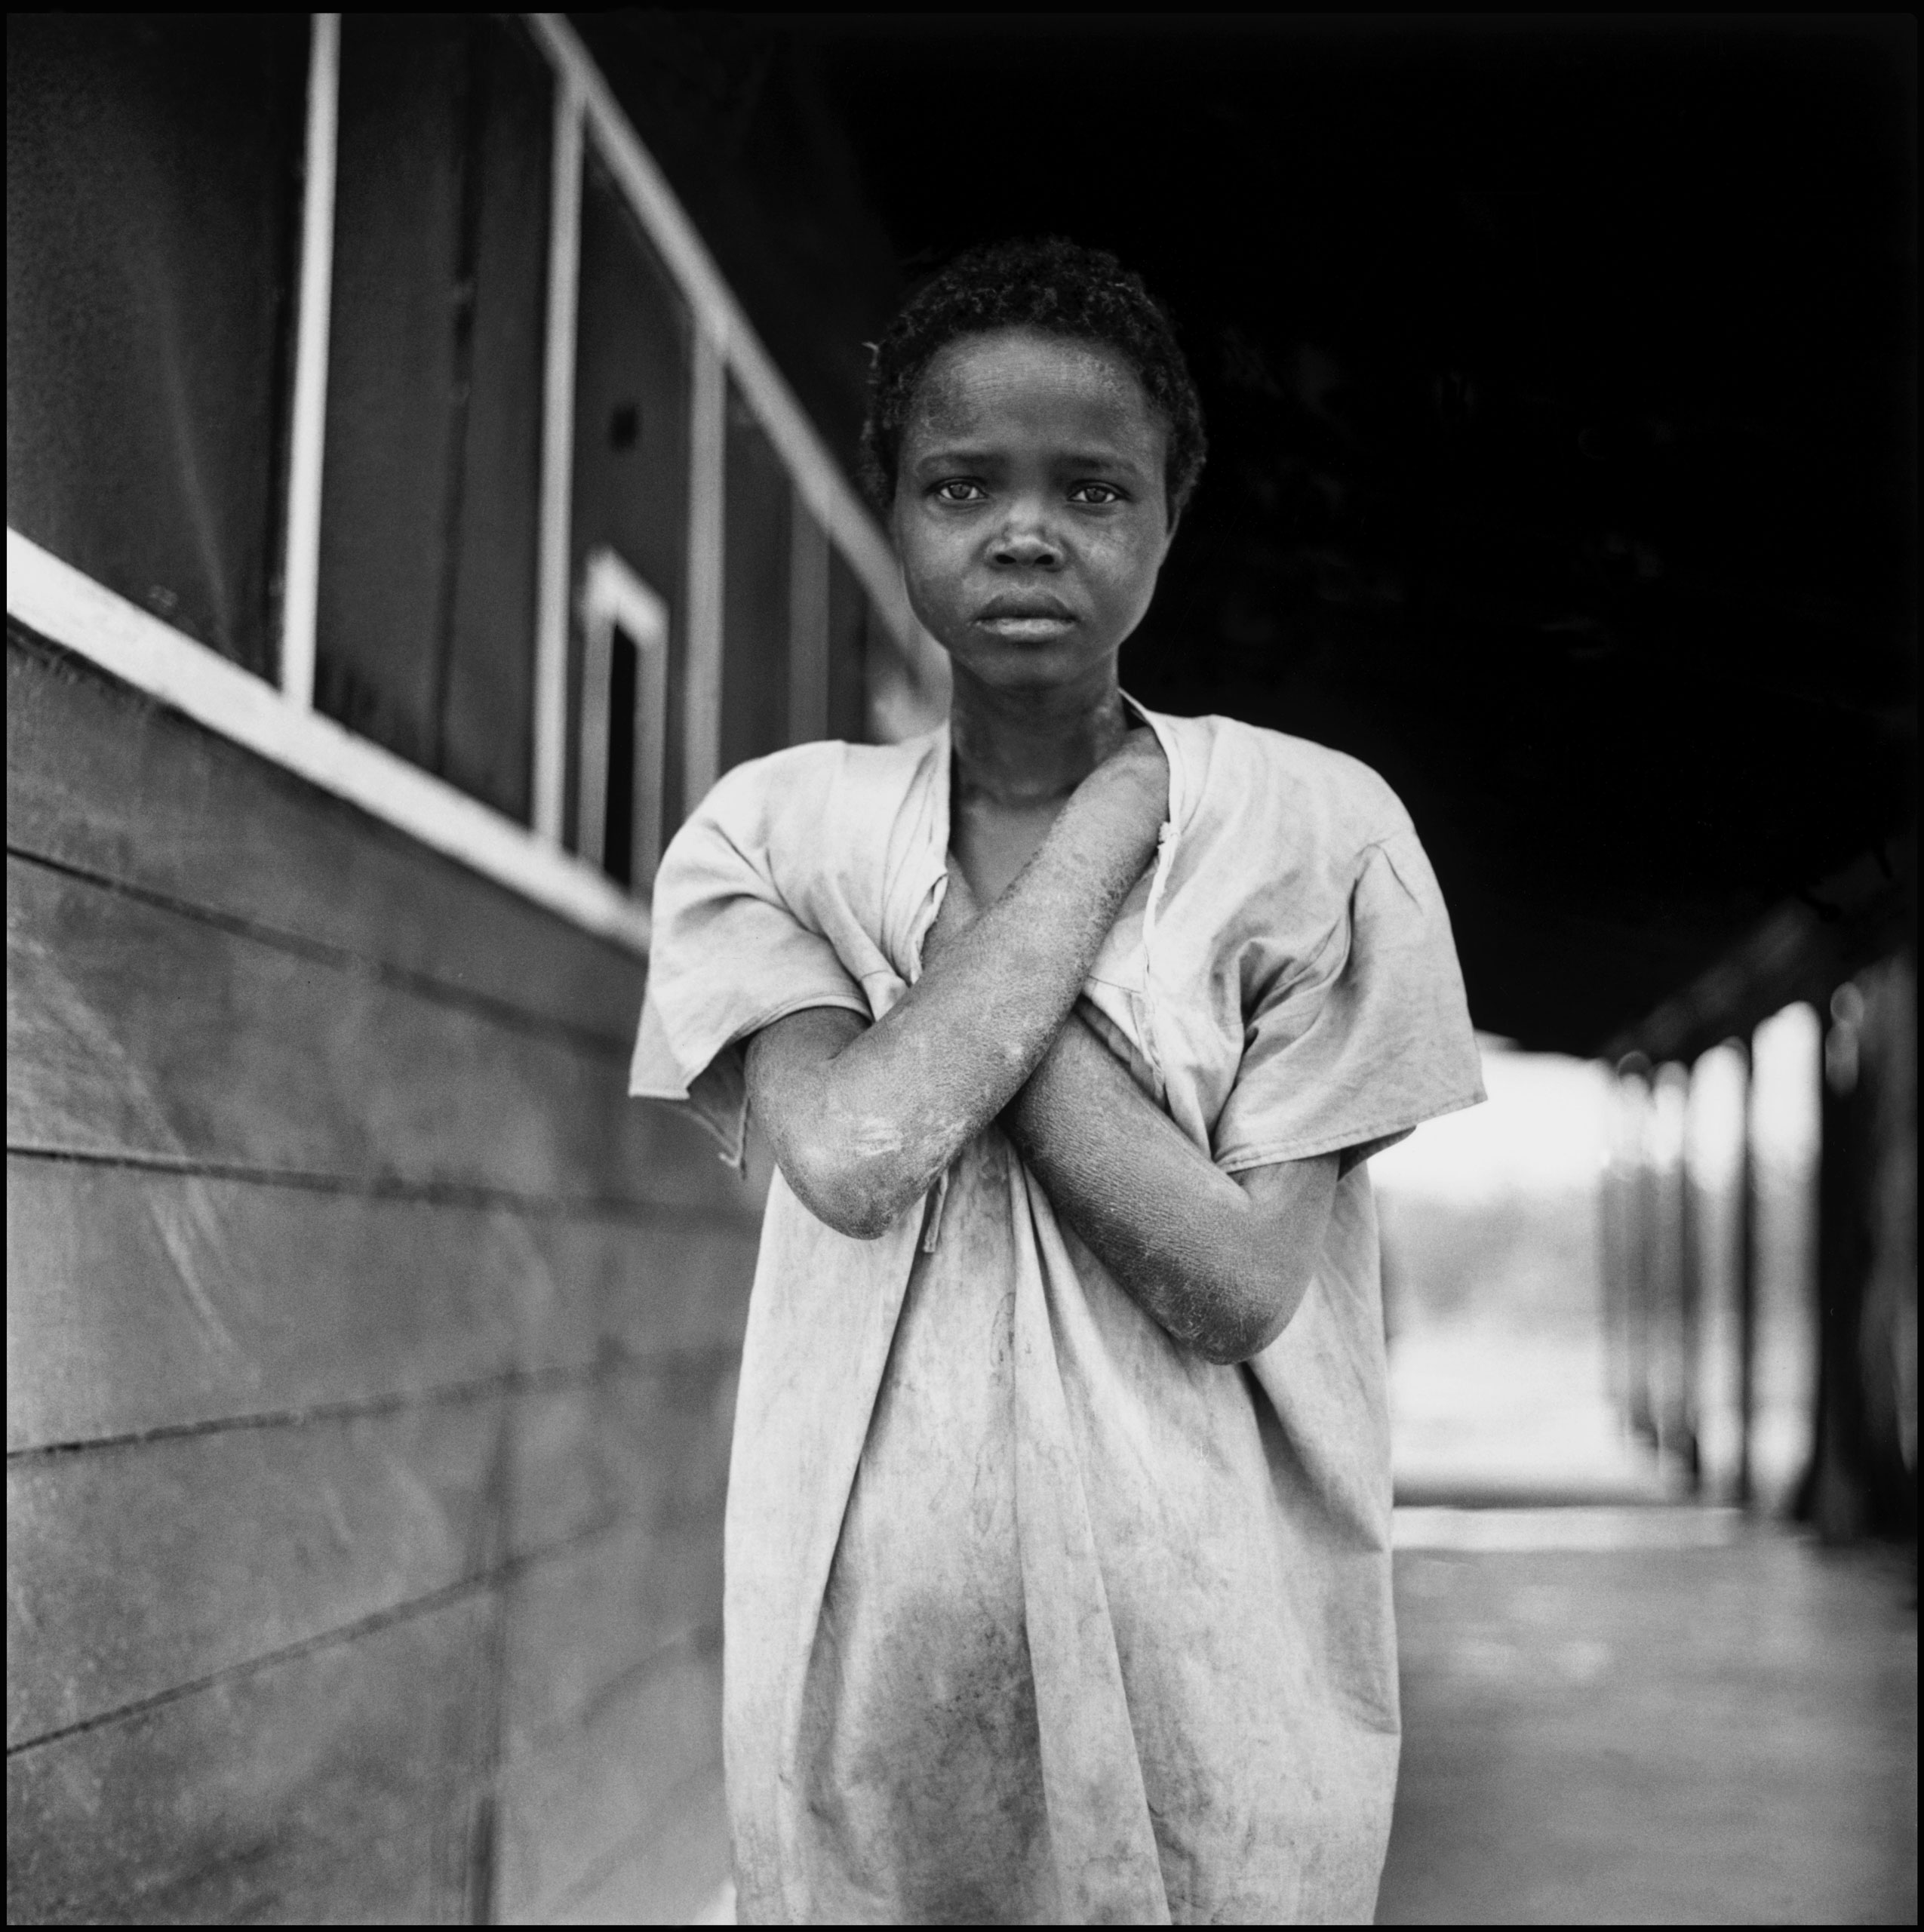 Haiti insane asylum. 1954.